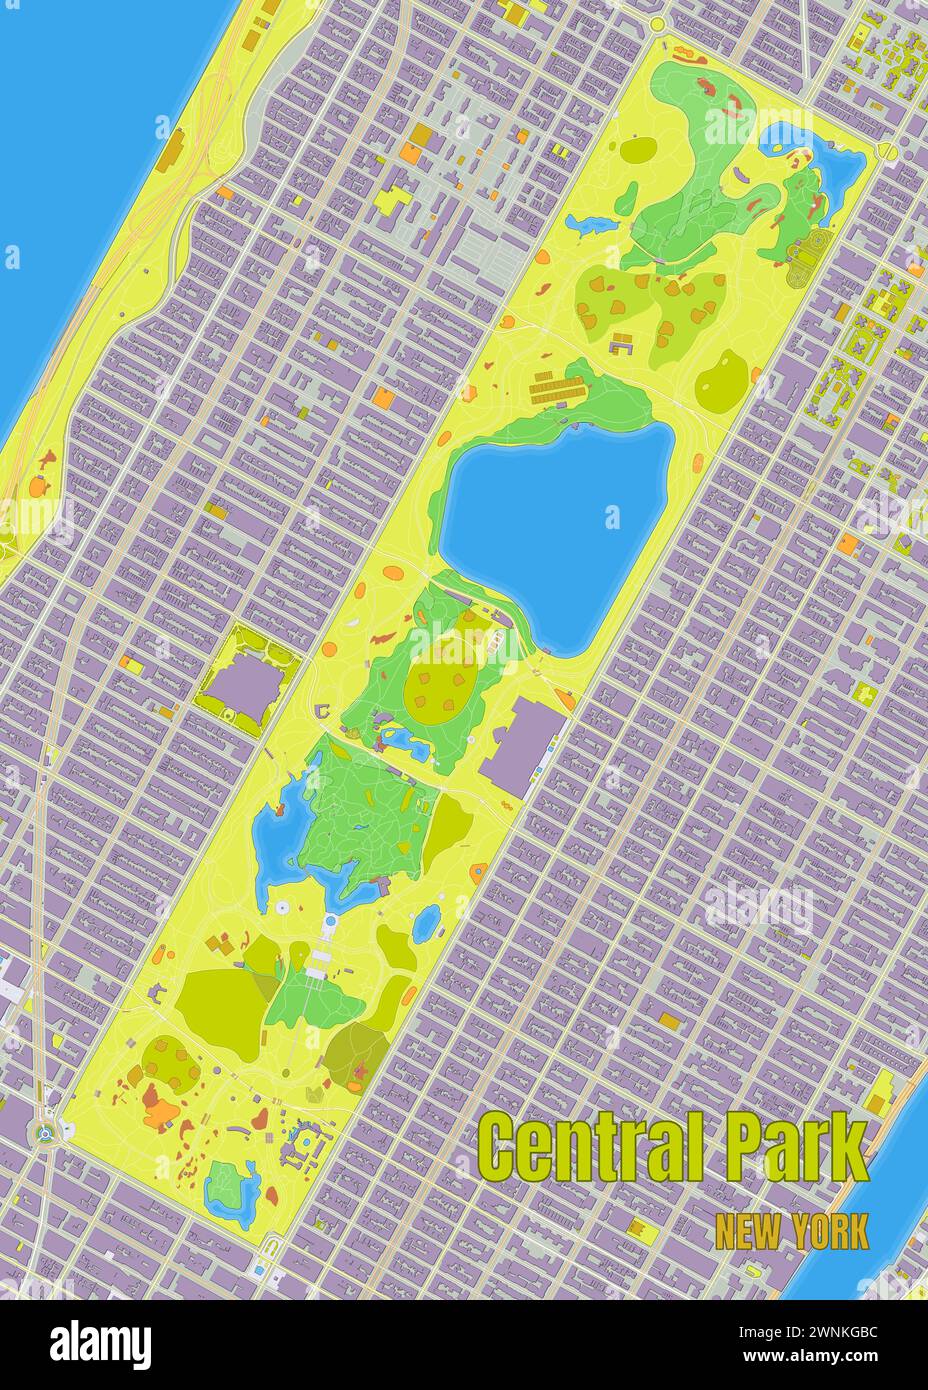 New York Central Park Karte Poster Kunst Stock Vektor